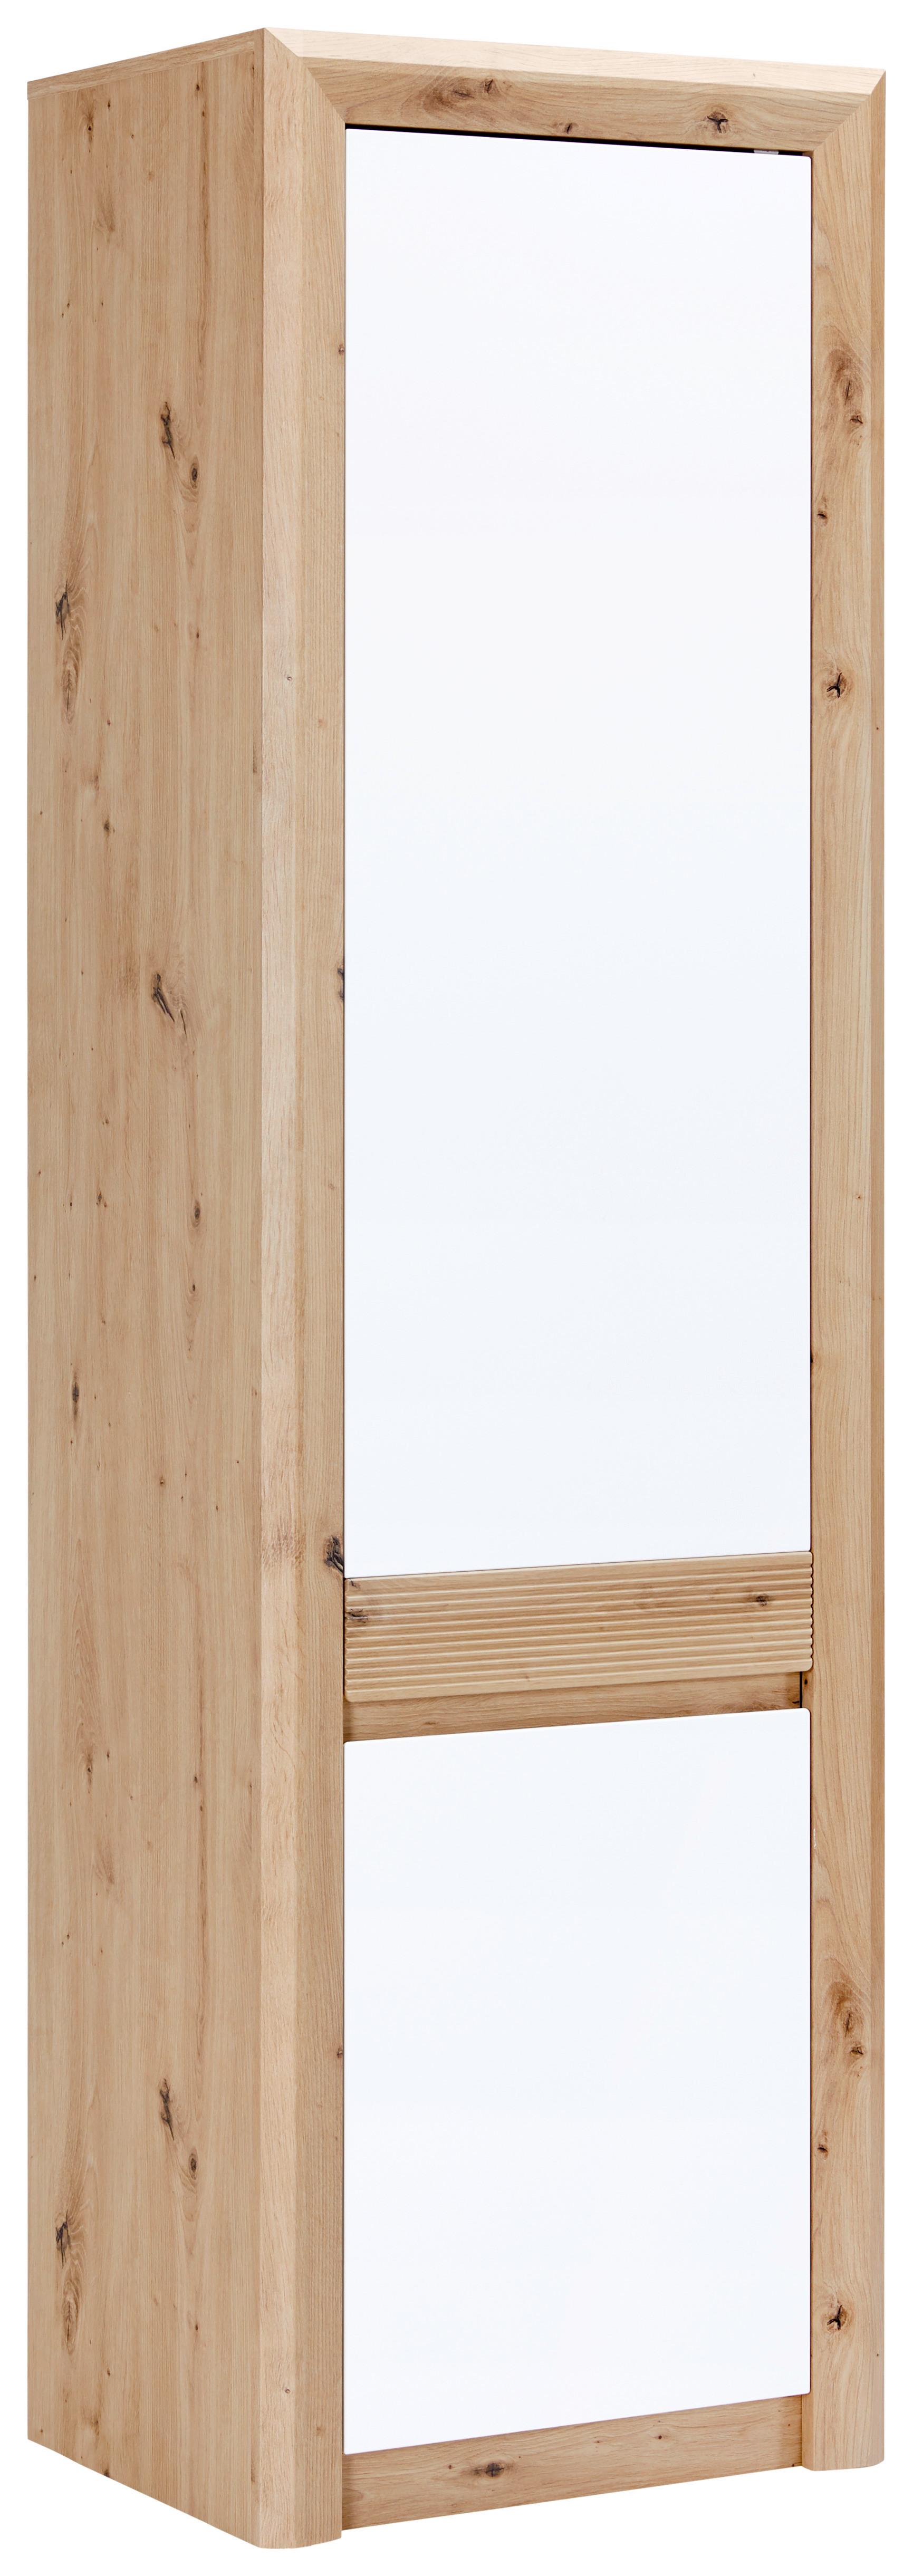 Skříň Kashmir New - bílá/barvy dubu, Moderní, kompozitní dřevo (57/192/41cm) - James Wood